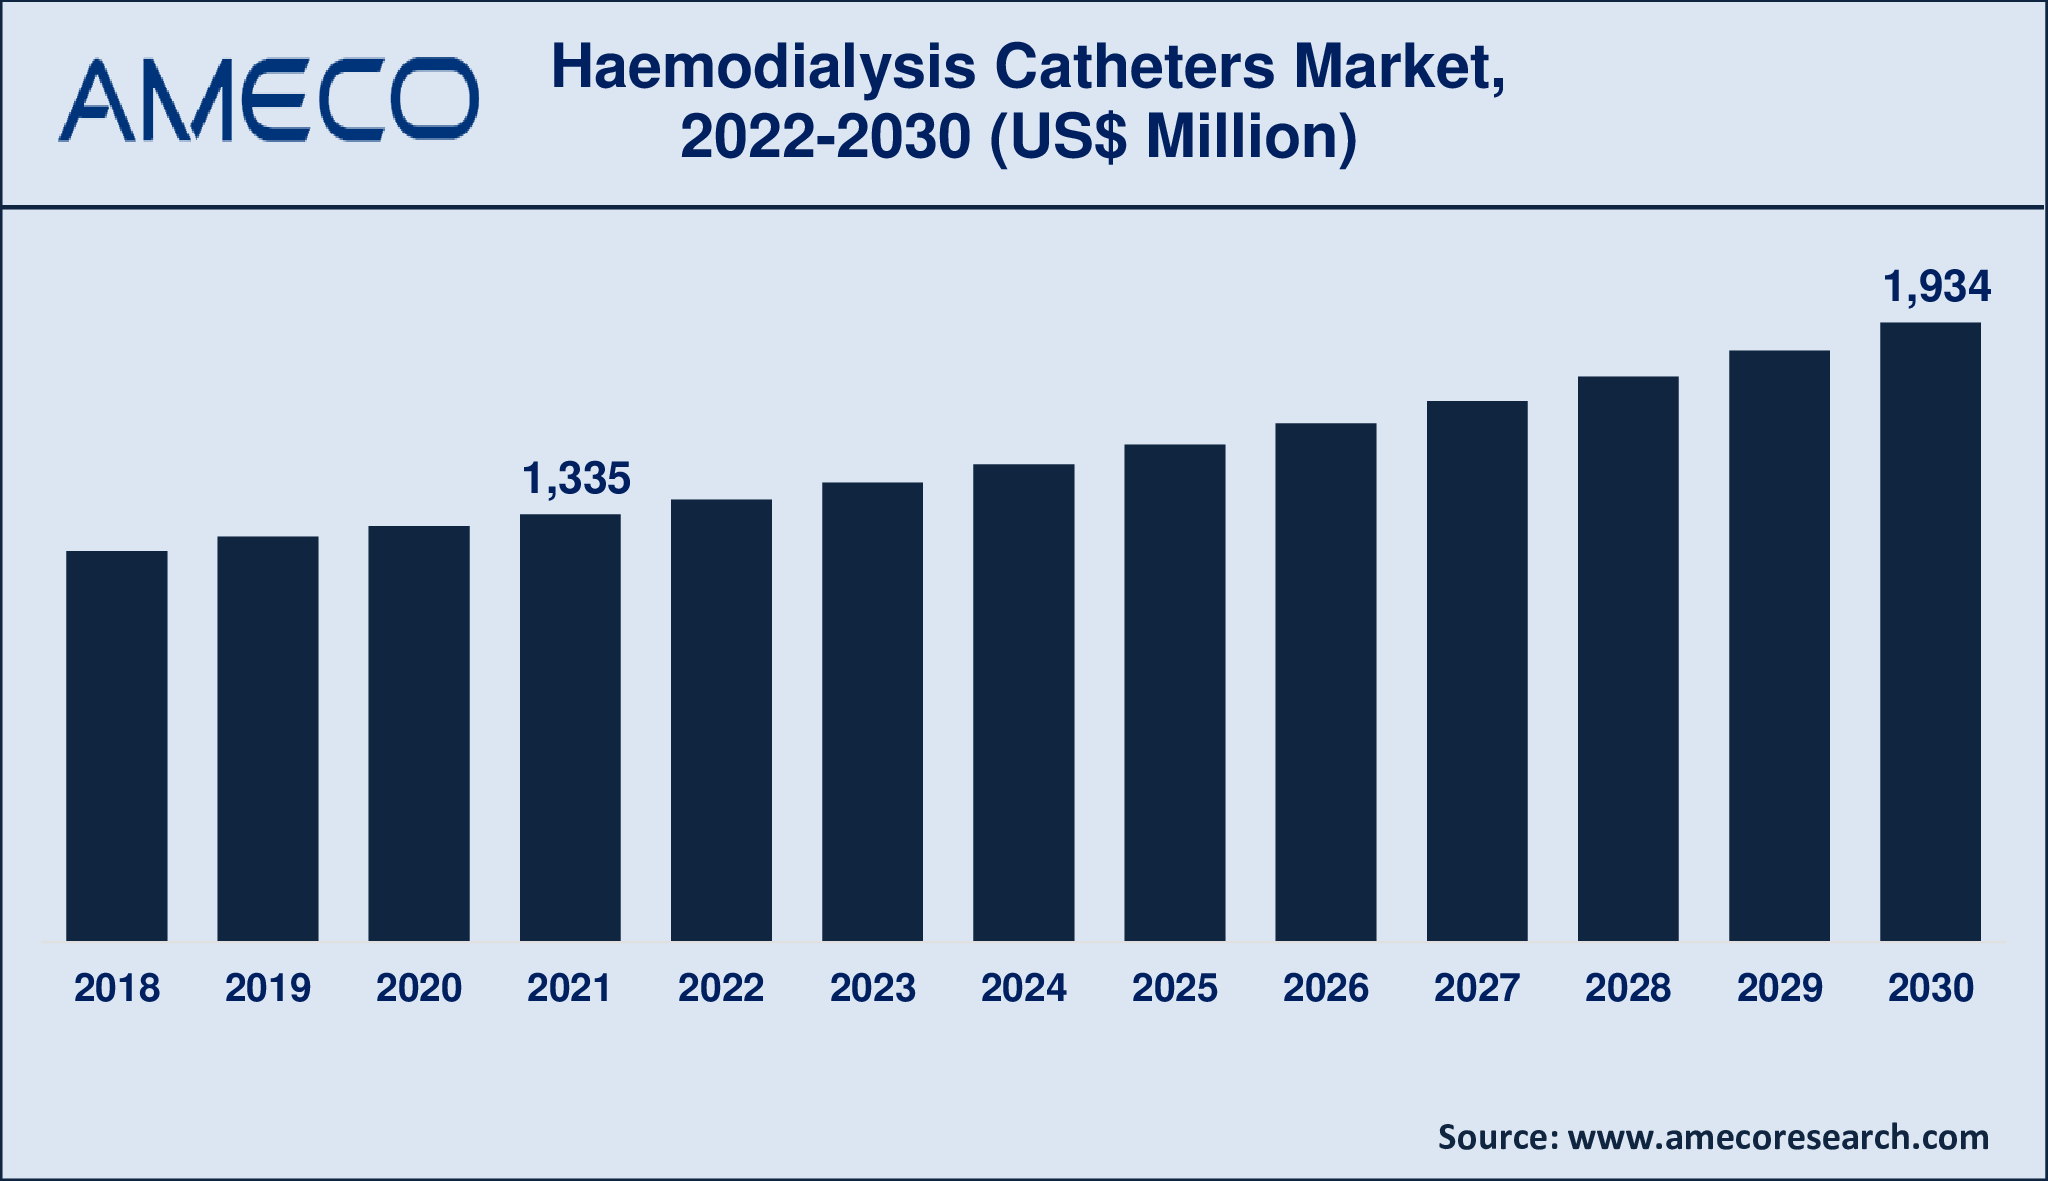 Haemodialysis Catheters Market Report 2030